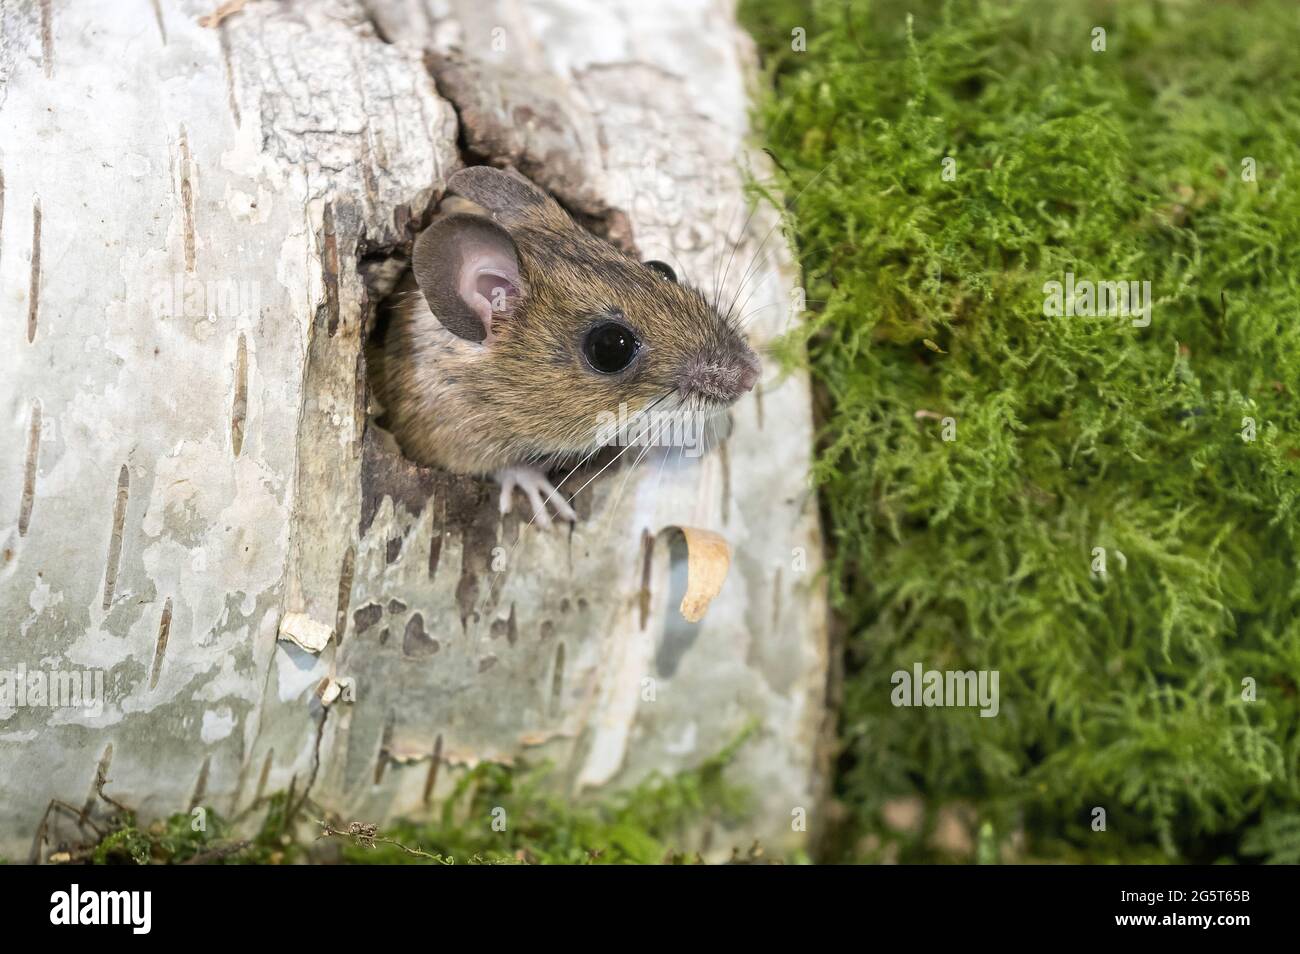 Ratón de cuello amarillo (Apodemus flavicollis), saliendo de un agujero en un tronco de abedul, Alemania, Mecklemburgo-Pomerania Occidental Foto de stock